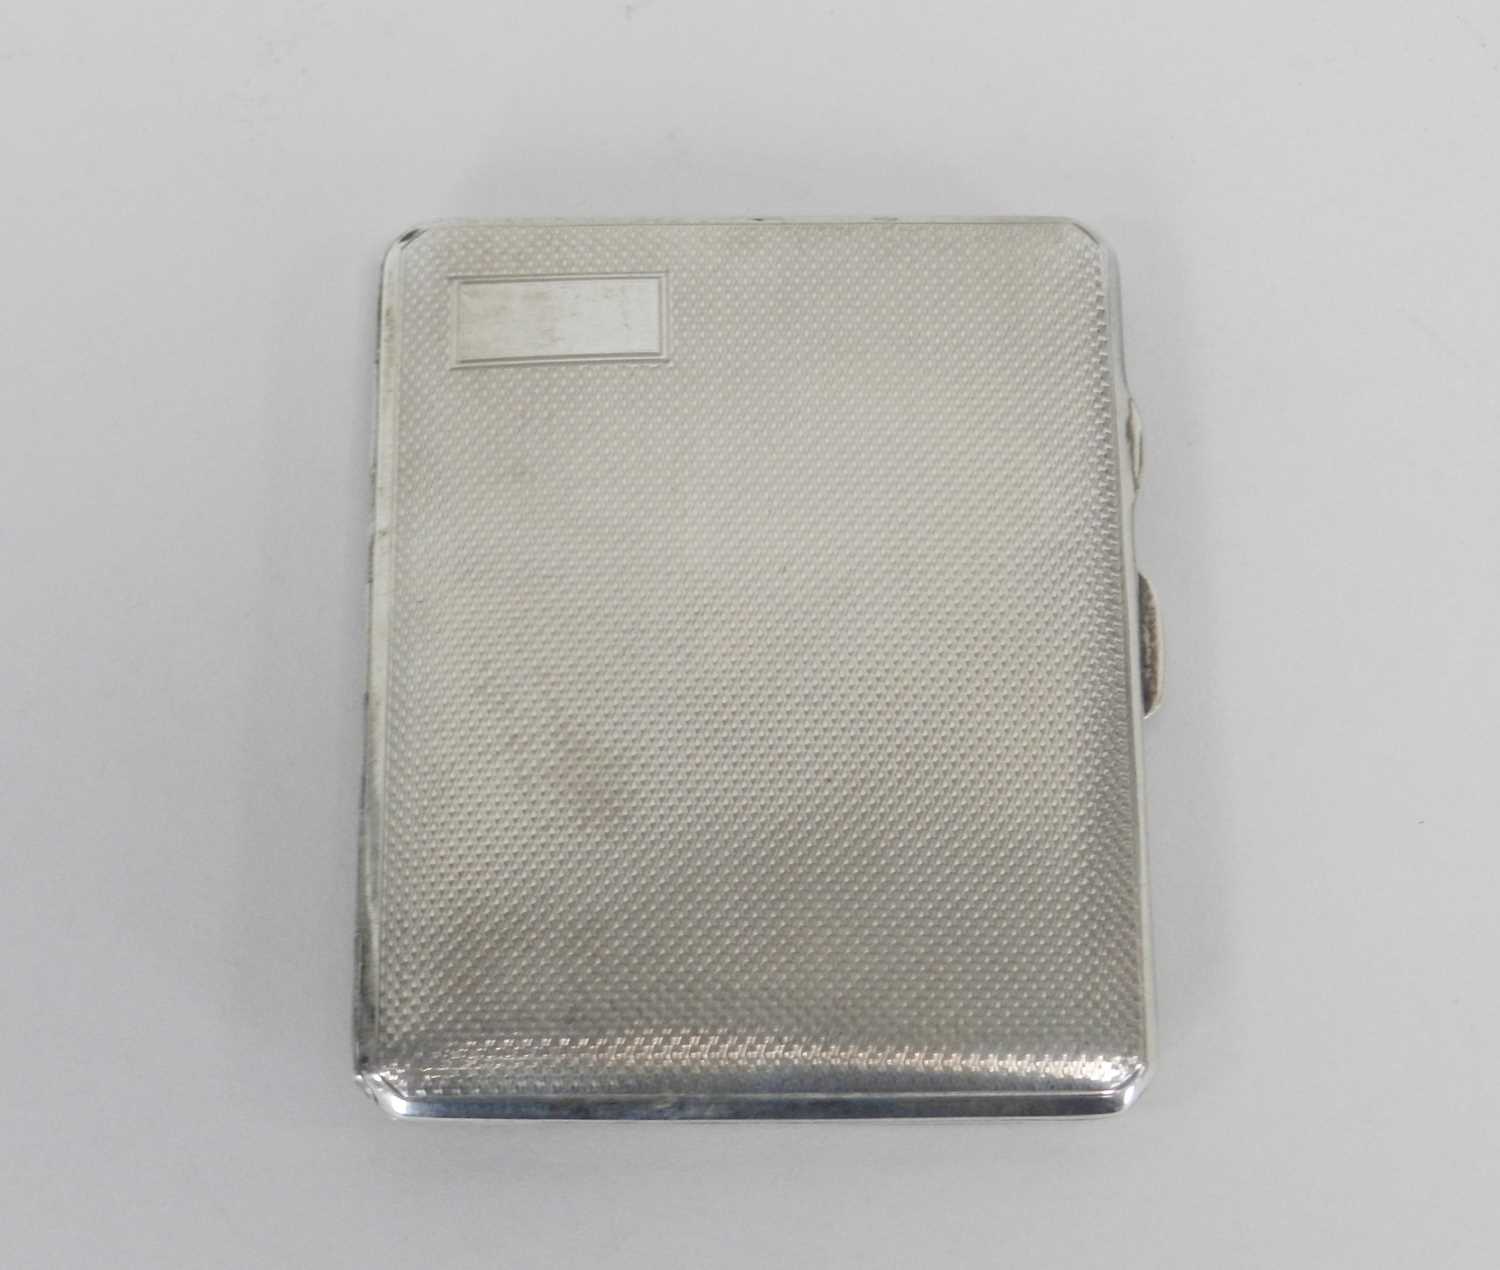 Lot 26 - A silver cigarette case